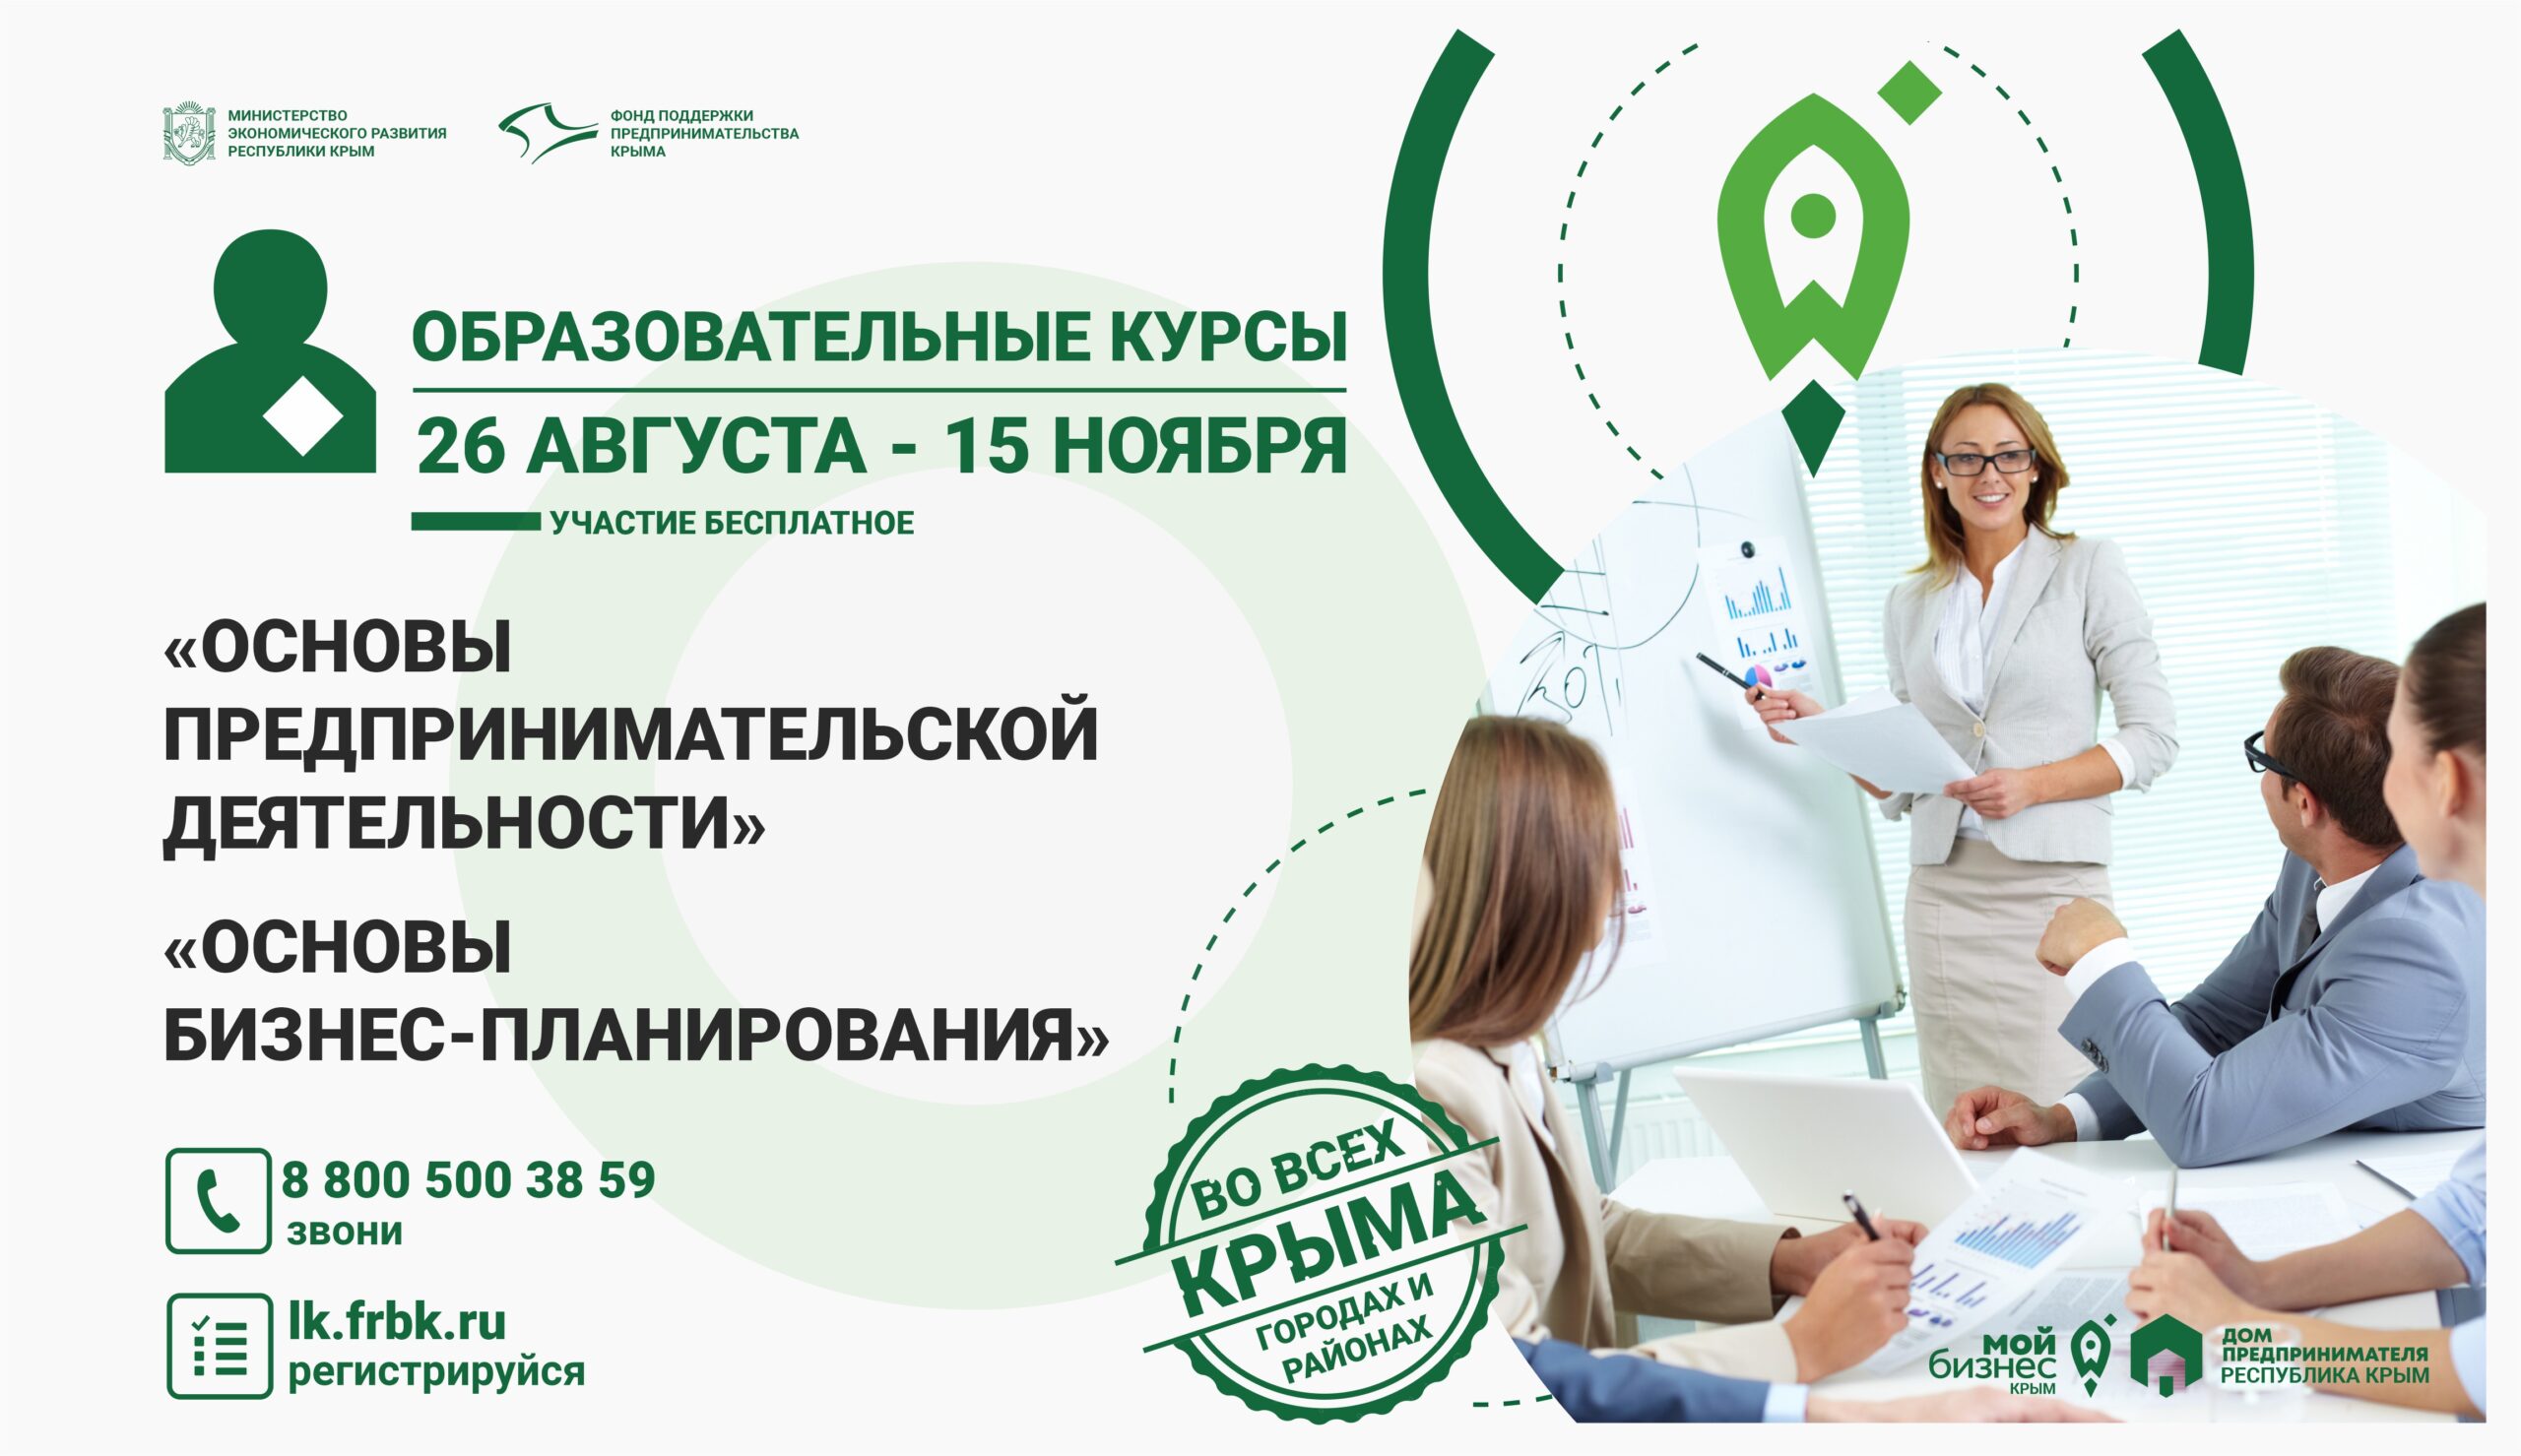 В Крыму стартует образовательный проект по основам предпринимательской деятельности и бизнес-планированию.